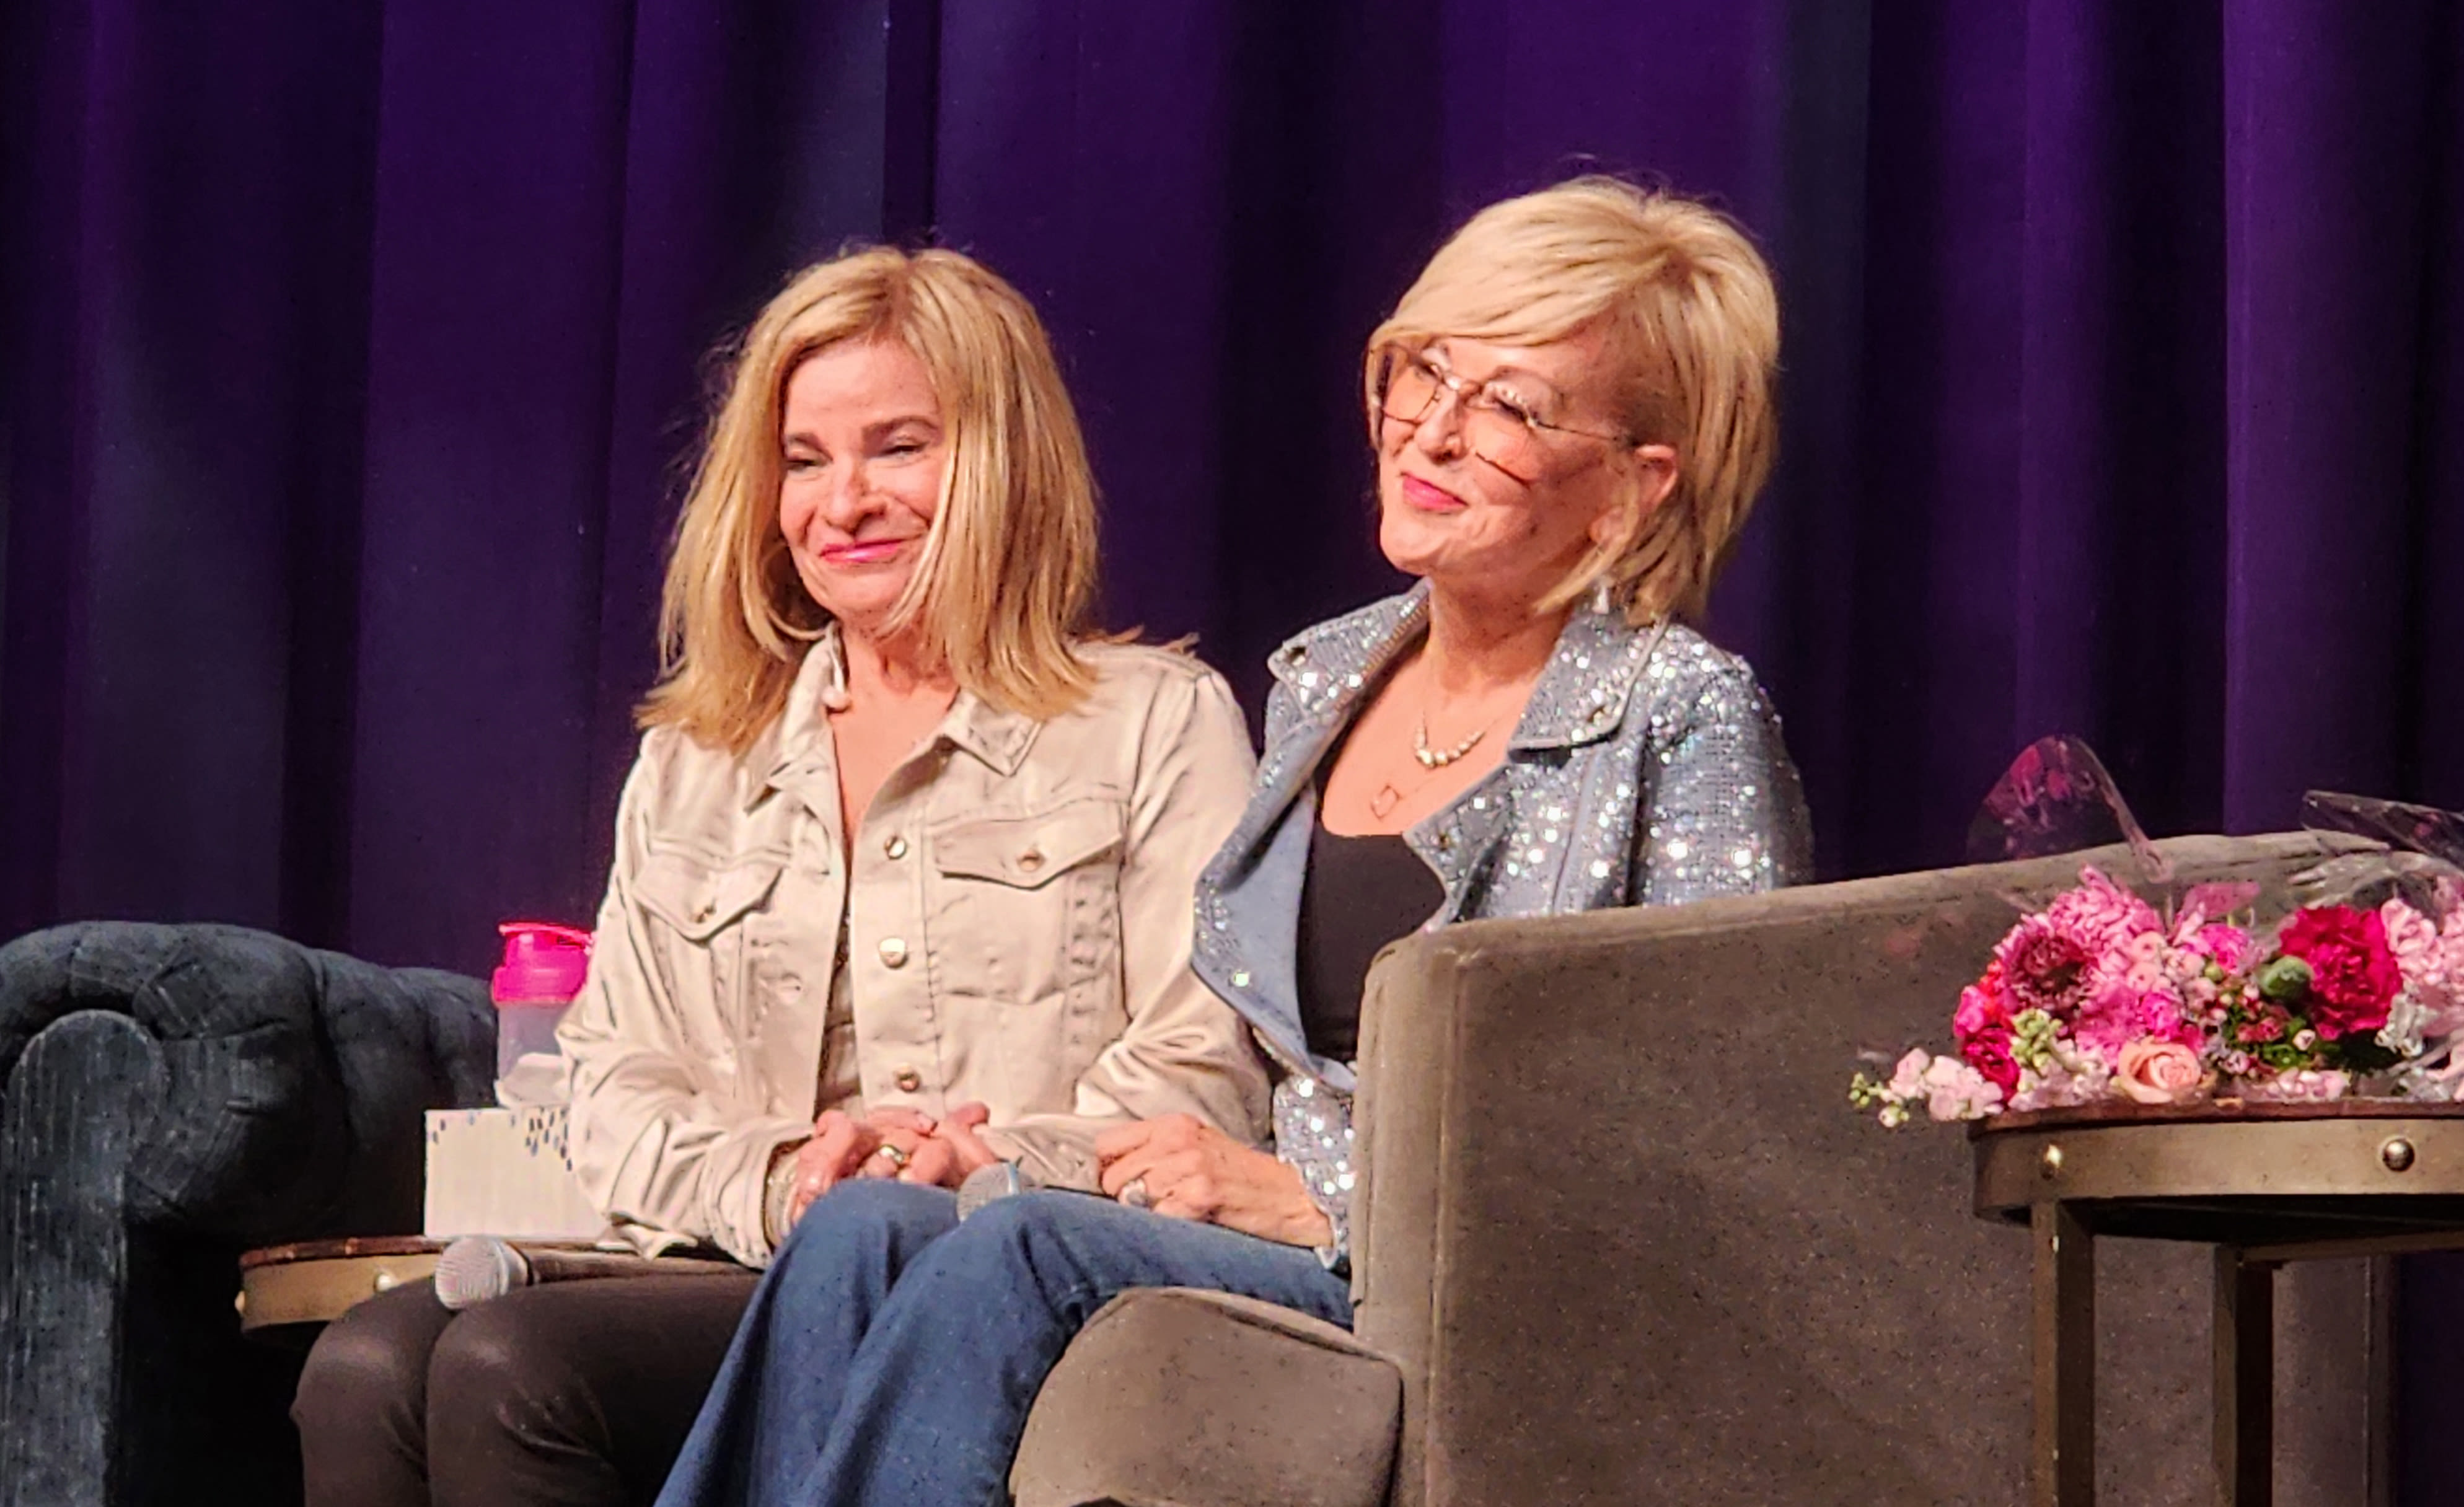 Lori Barghini and Julia Cobbs say farewell during final episode of their ‘Lori and Julia’ radio talk show